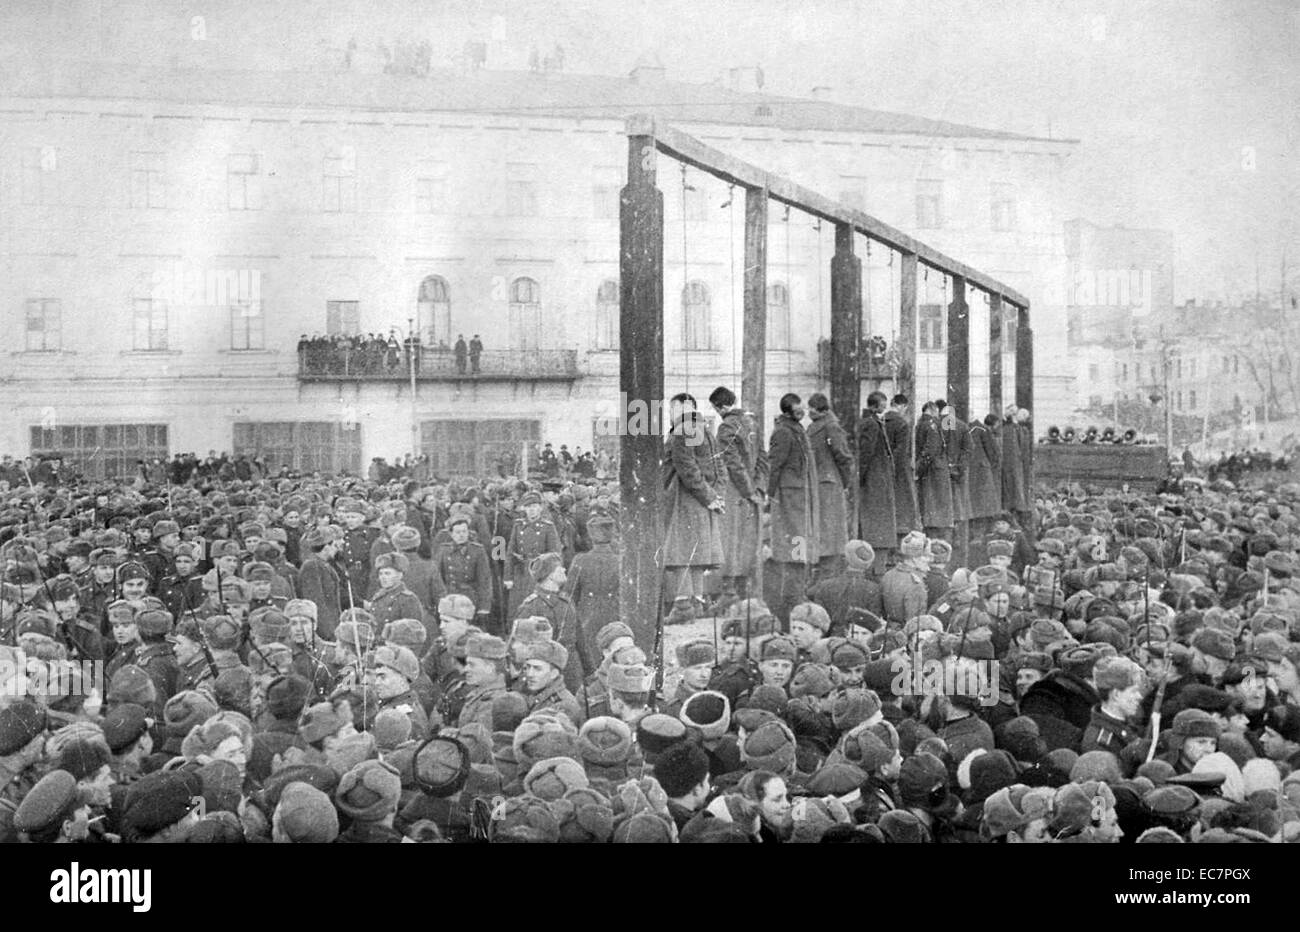 Photographie d'une exécution publique de soldats allemands à Kiev. Datée 1946 Banque D'Images